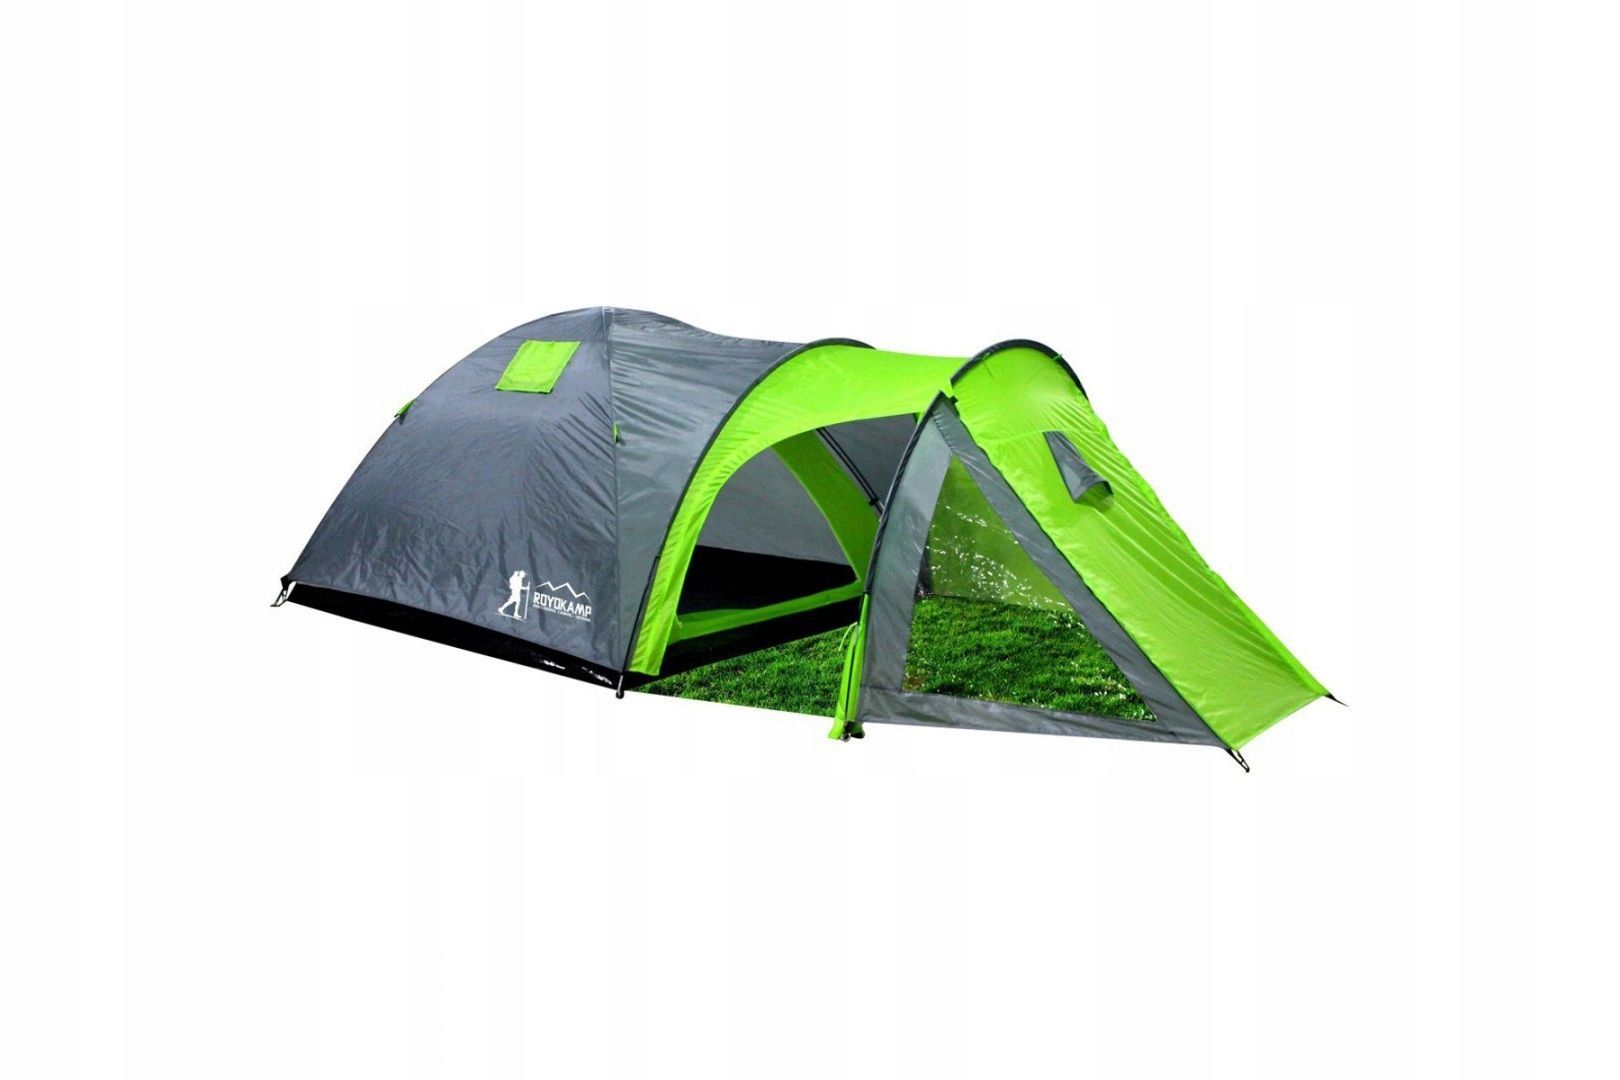 Купить палатку туристическую цены. Namiot 4 палатка. Палатка туристическая 4-х местная 120 +210 x240x130 см (полиэстер) Grilland FDT-1104. Палатка namiot Now Kade 2579. Палатка Gelert Horizon Supreme 4 Tent.